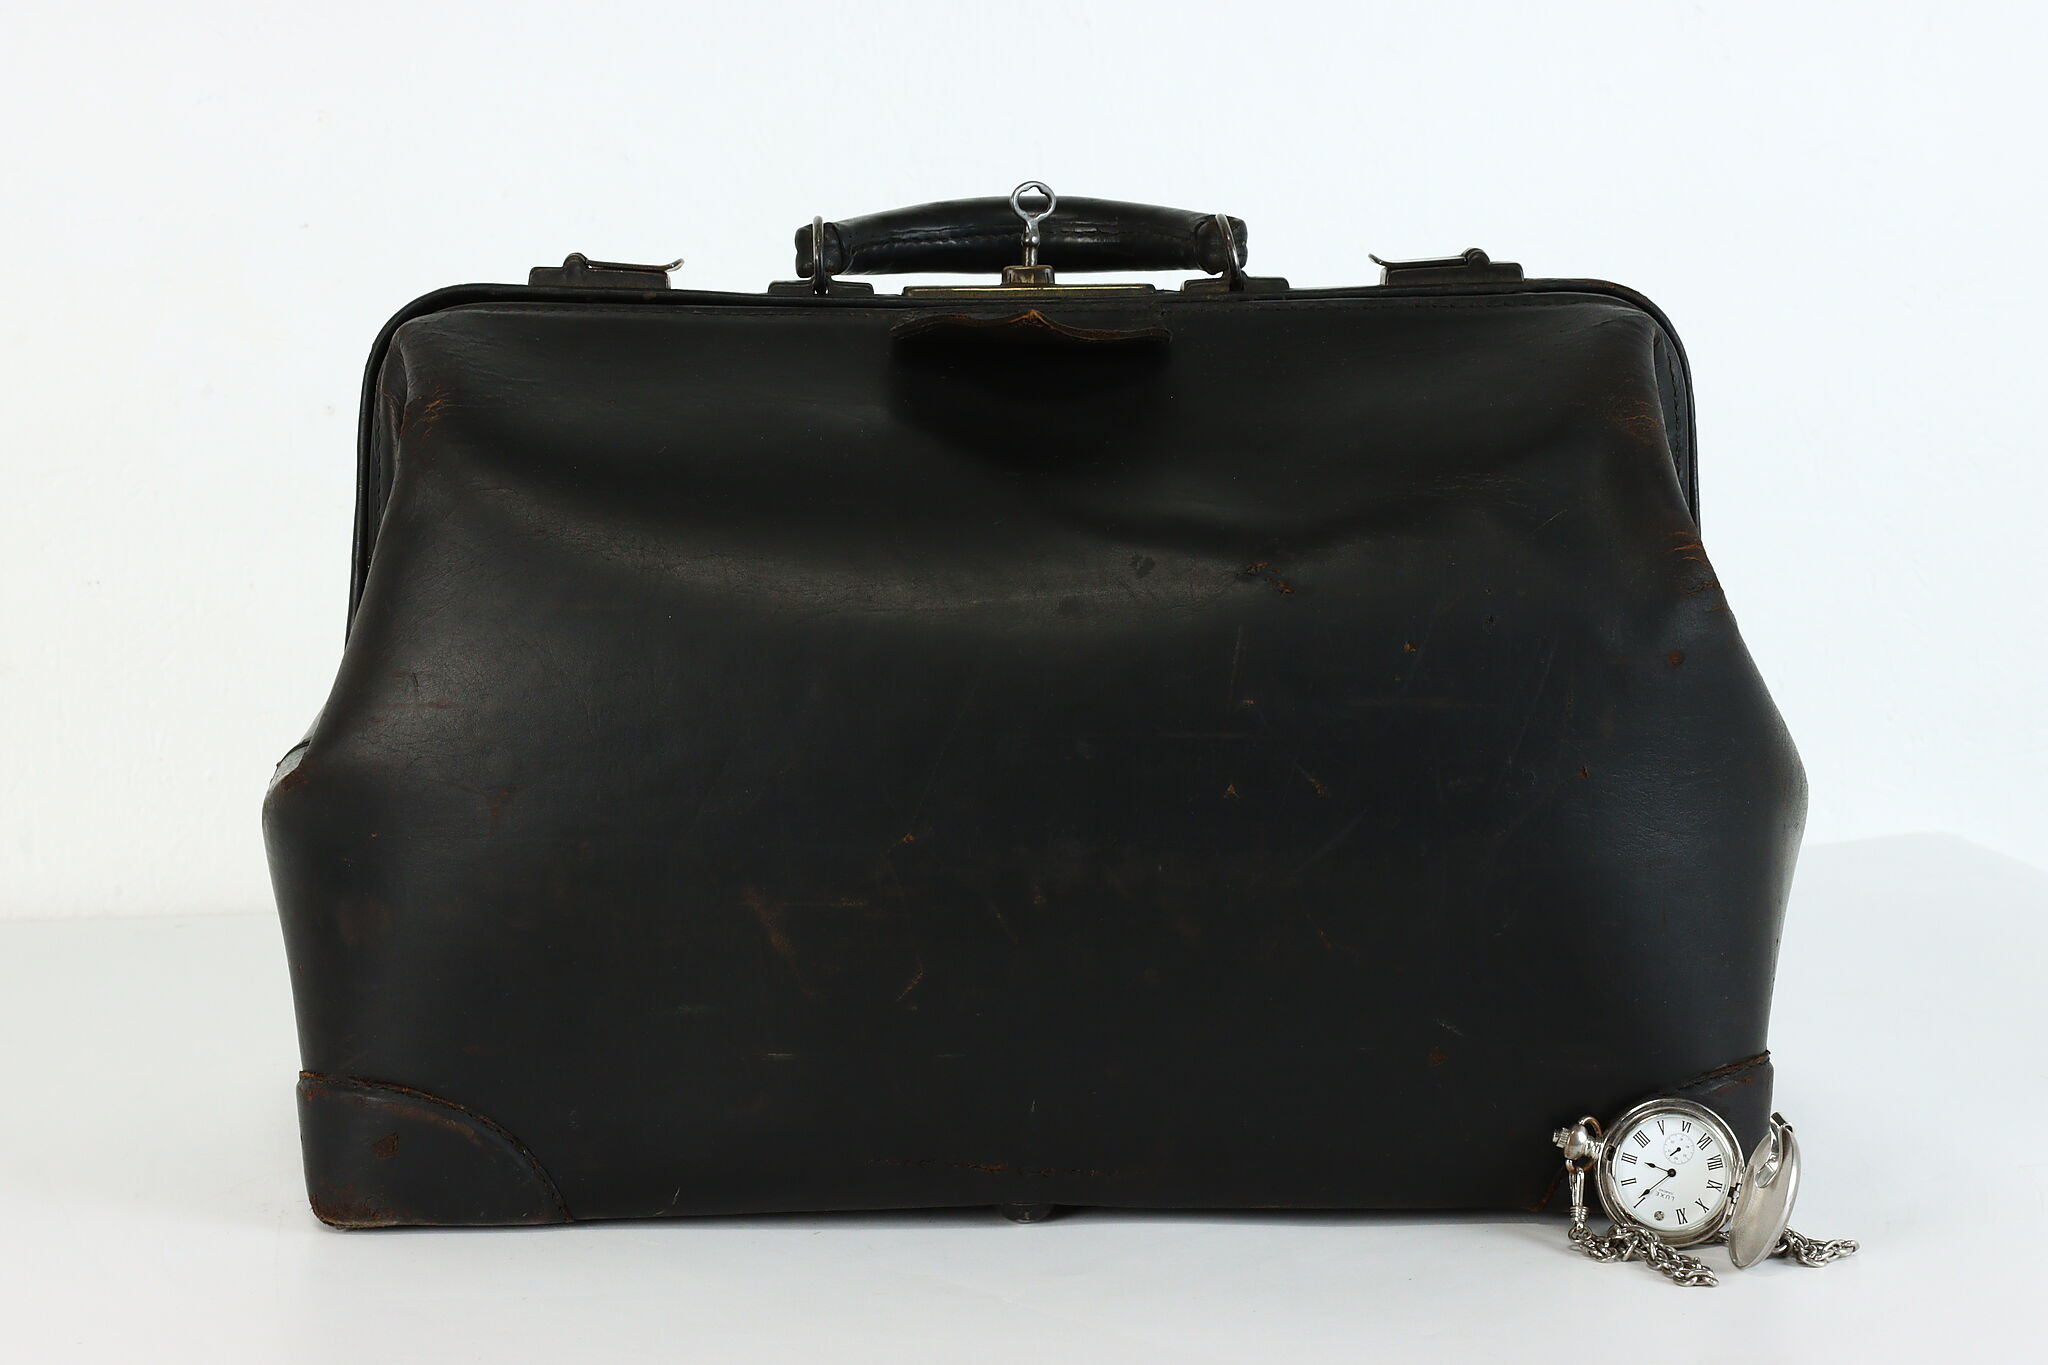 VINTAGE- Antique- Leather- Doctors Medical Bag